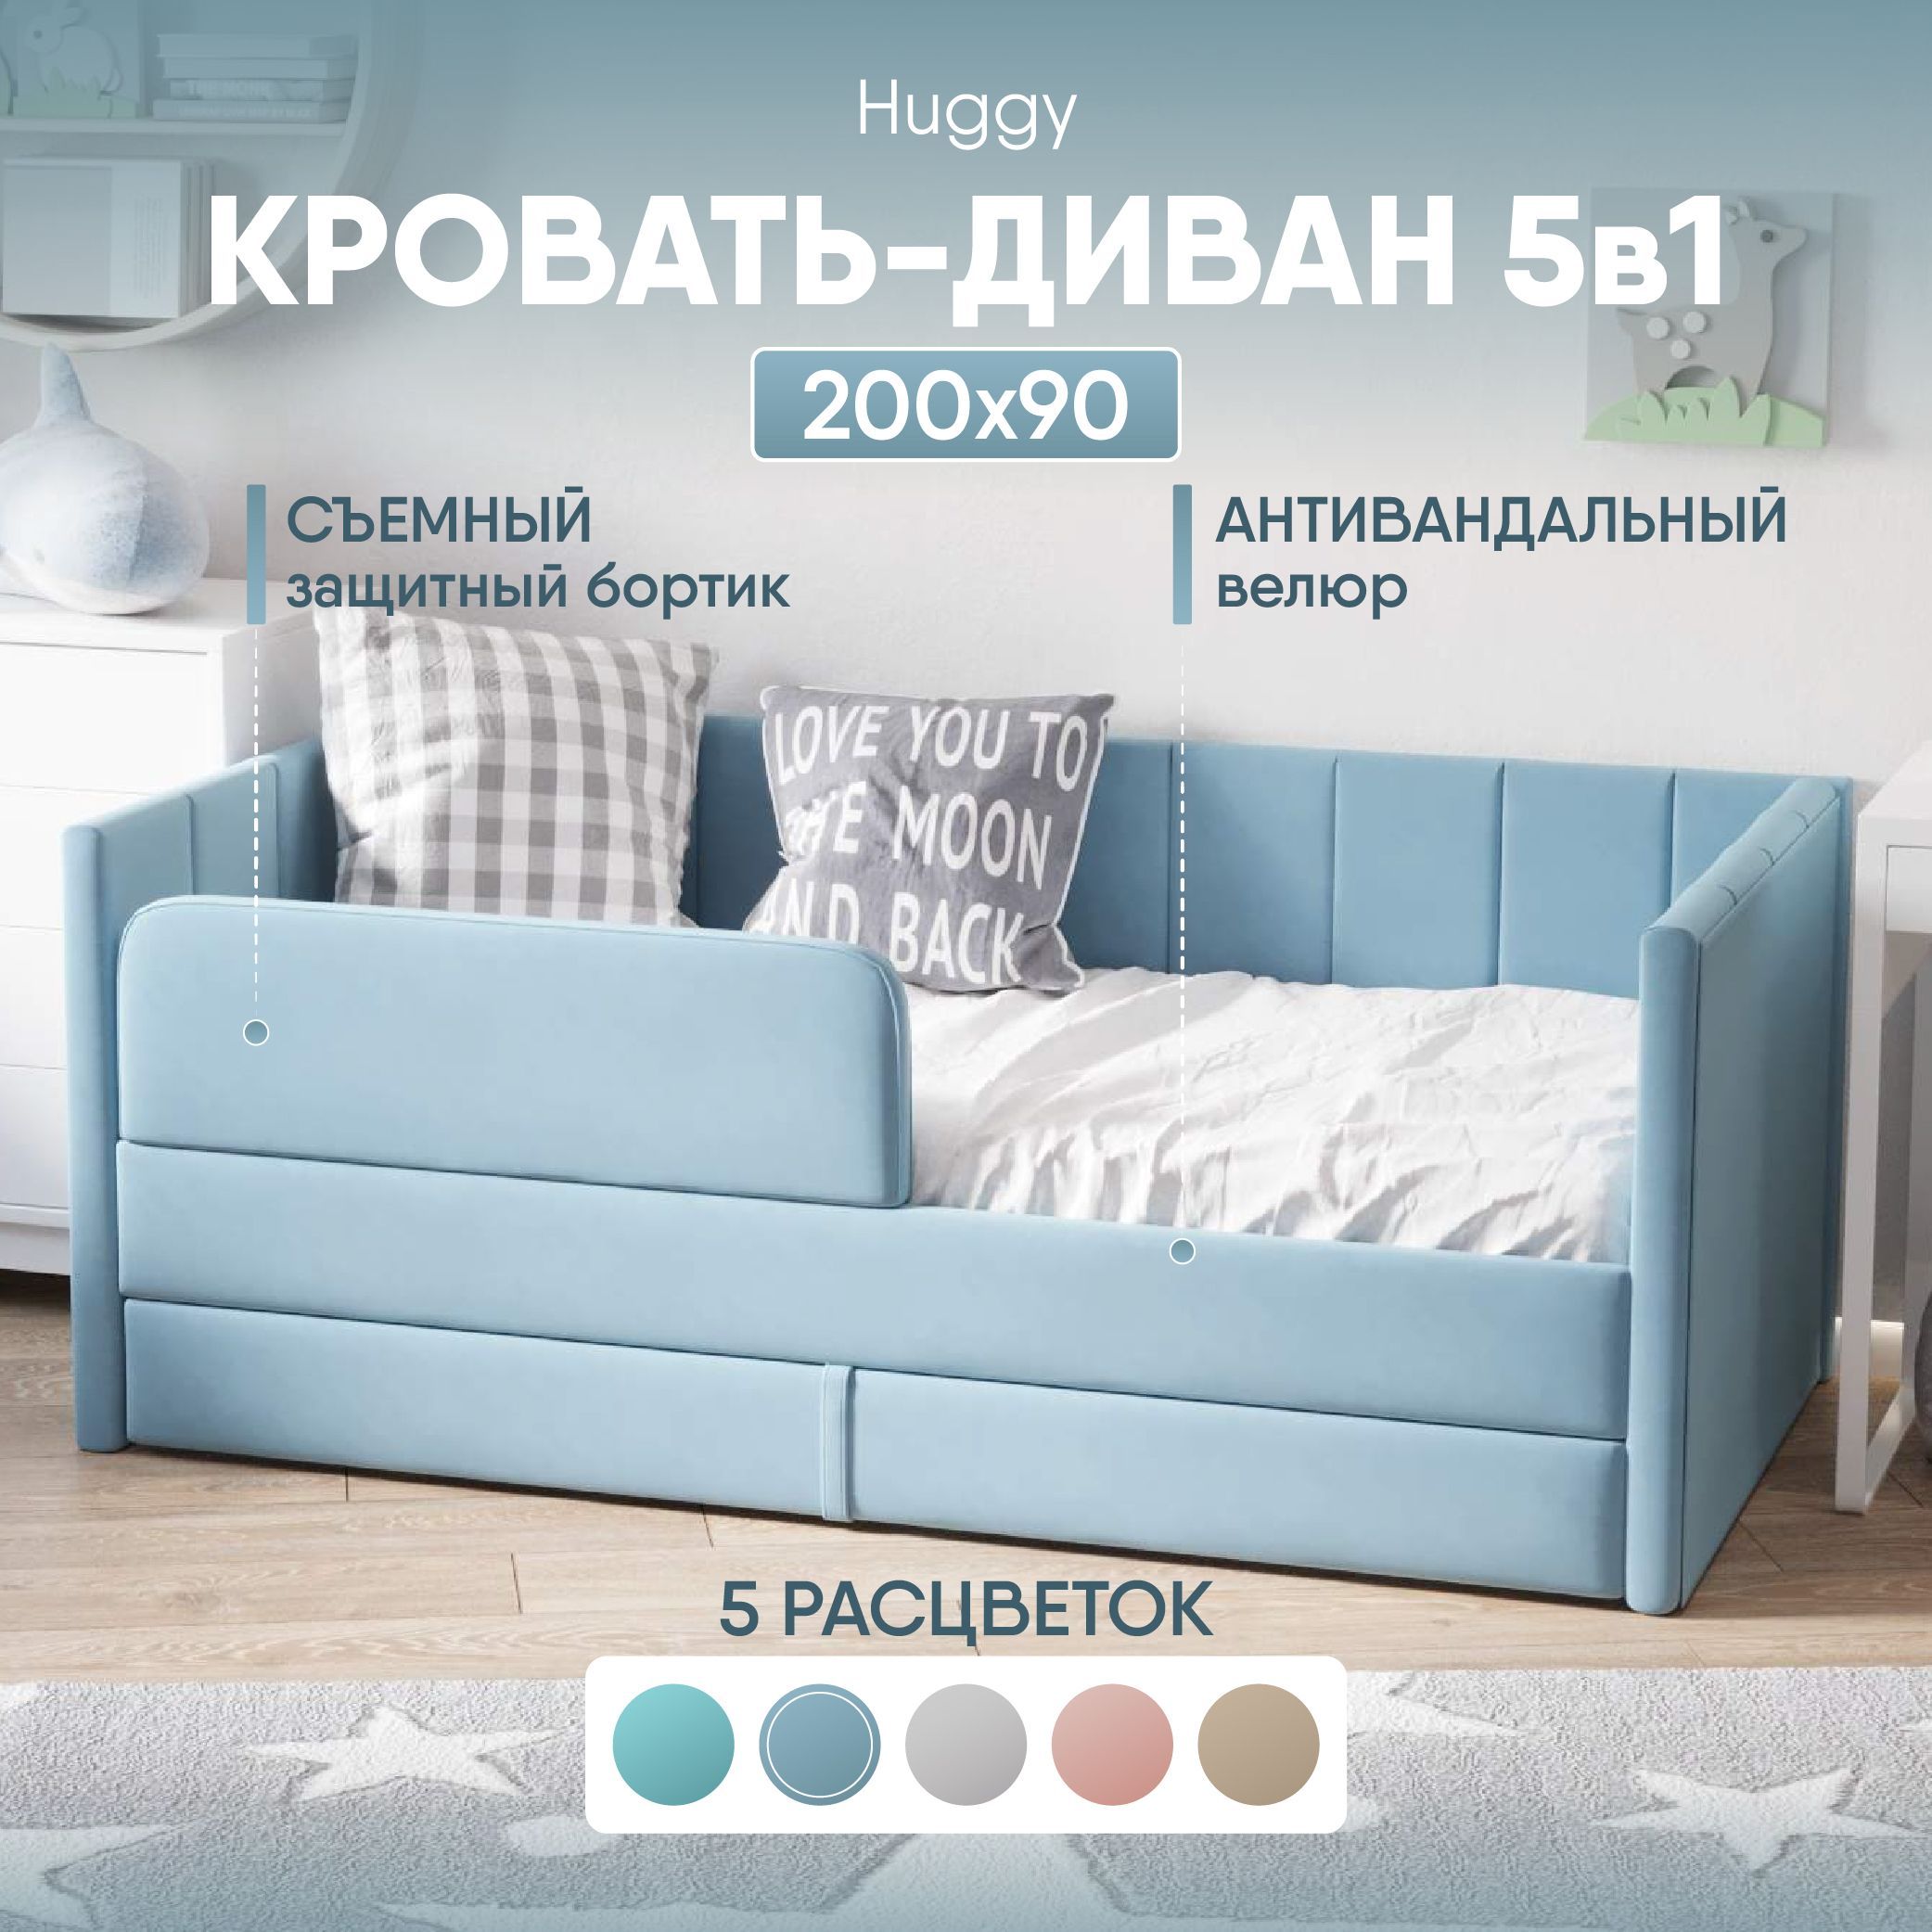 Кровать детская SleepAngel Huggy, 200х90 см, голубая, диван-кровать выкатной от 3 лет